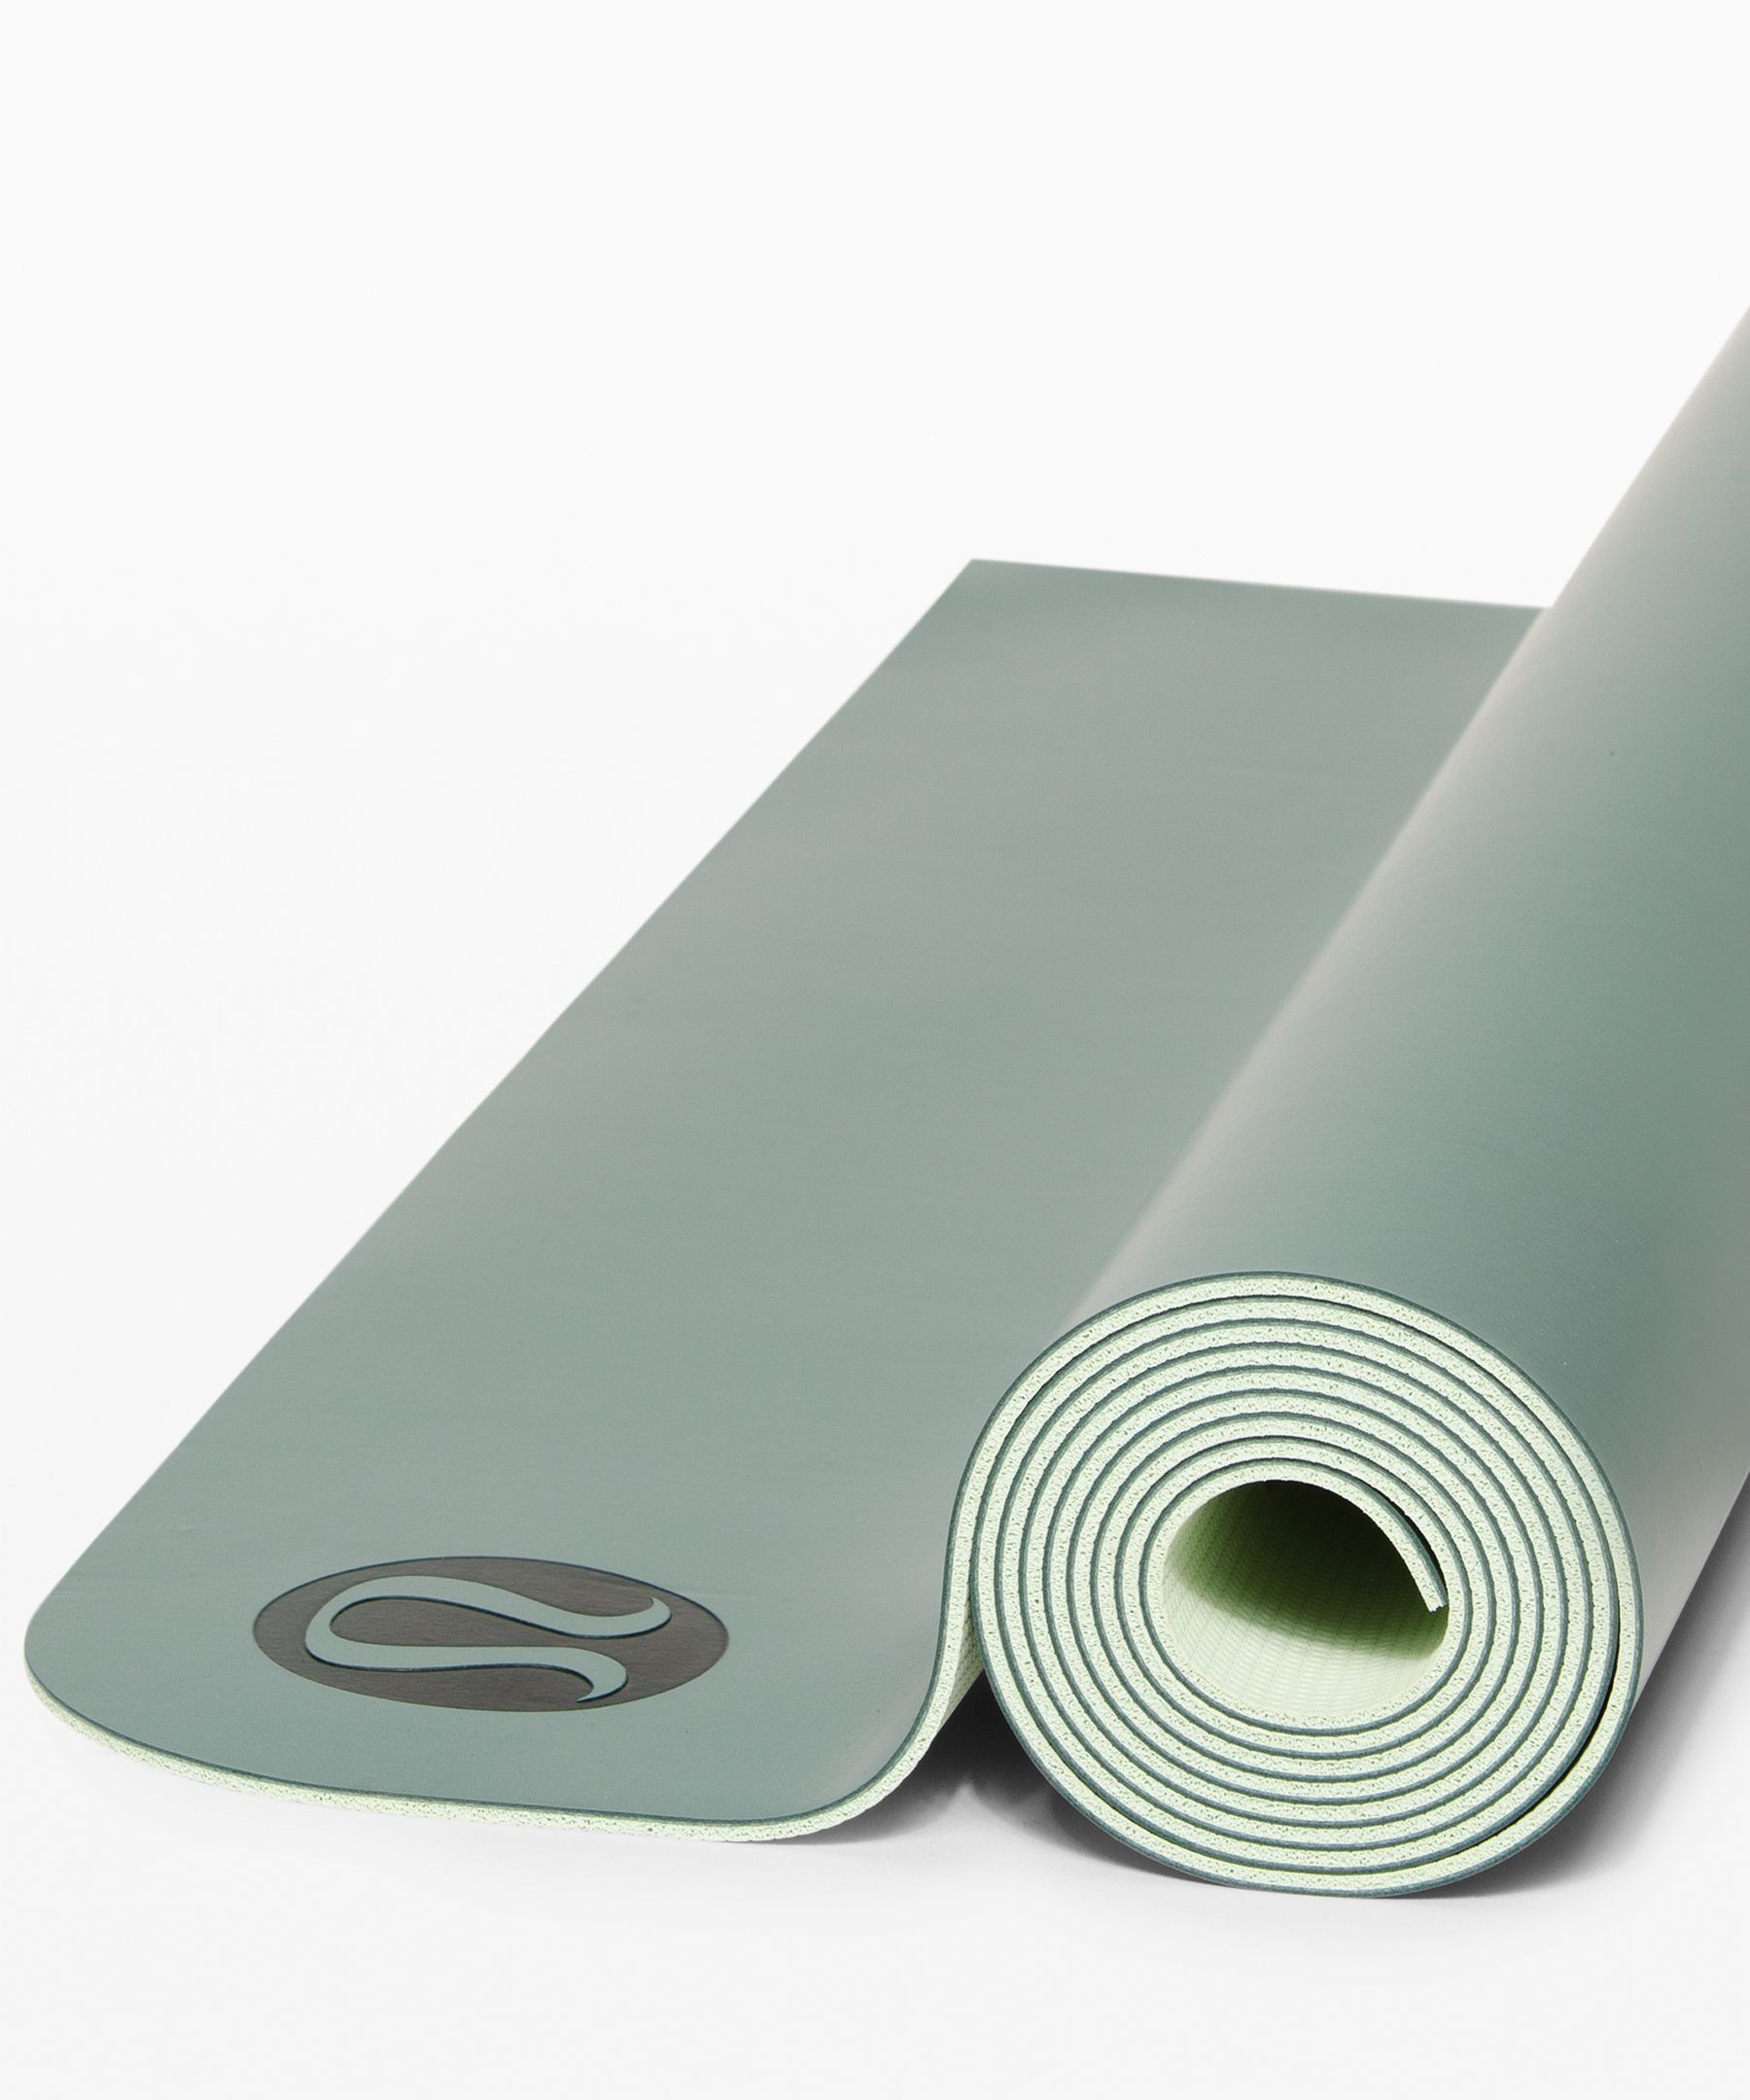 lululemon mat for hot yoga